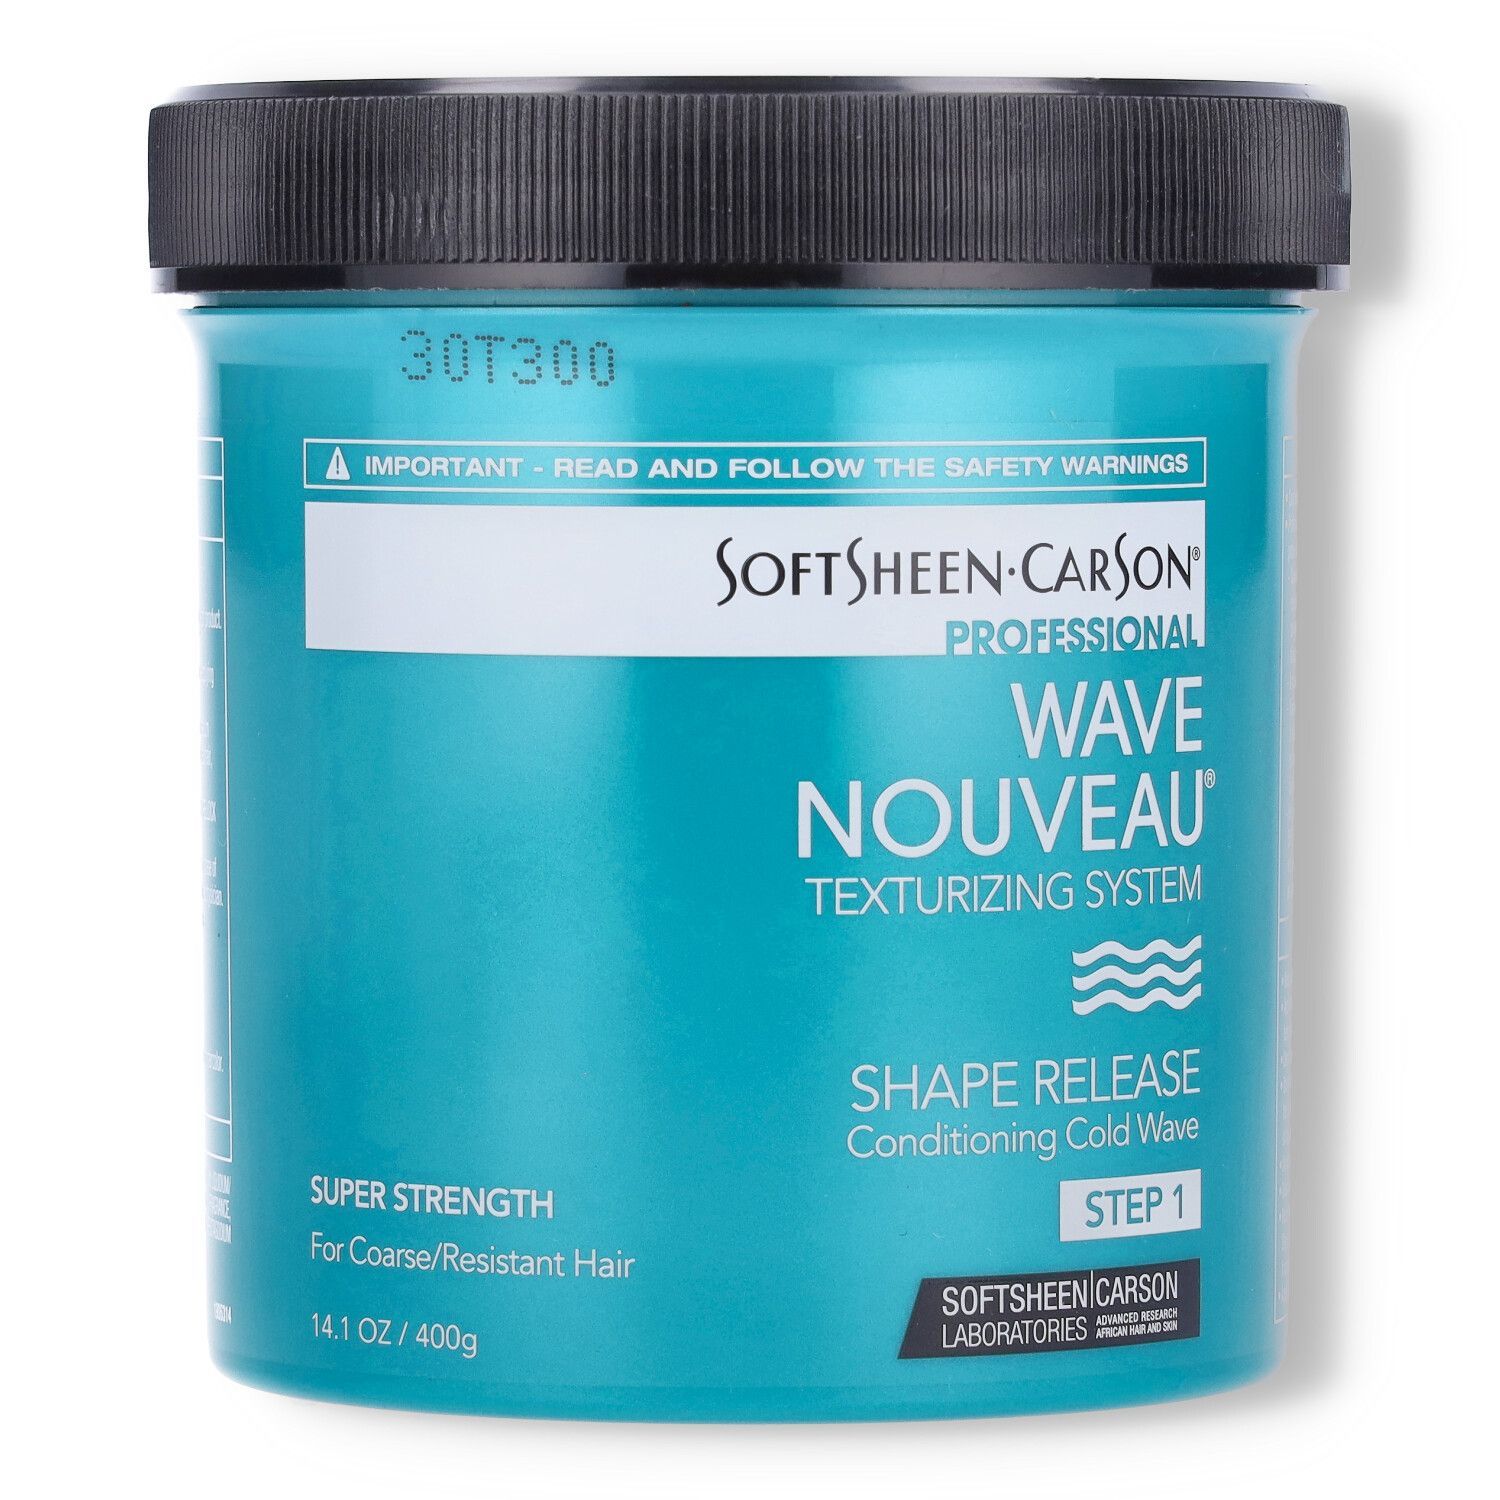 Wave Nouveau Shape Release, Phase I (resistant/coarse) - 400g